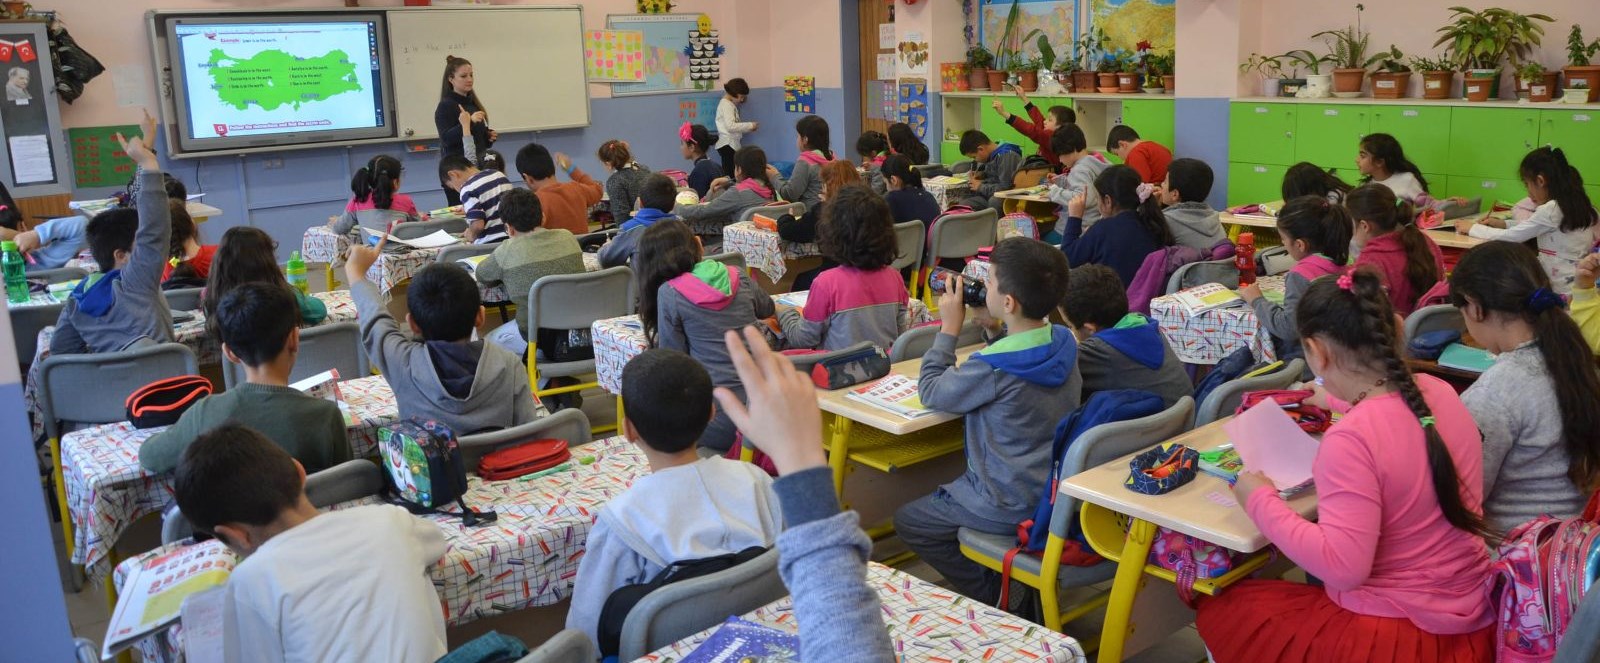 Türkiye’nin en kalabalık ilkokulundaki öğrenci sayısı 66 ilçeden fazla